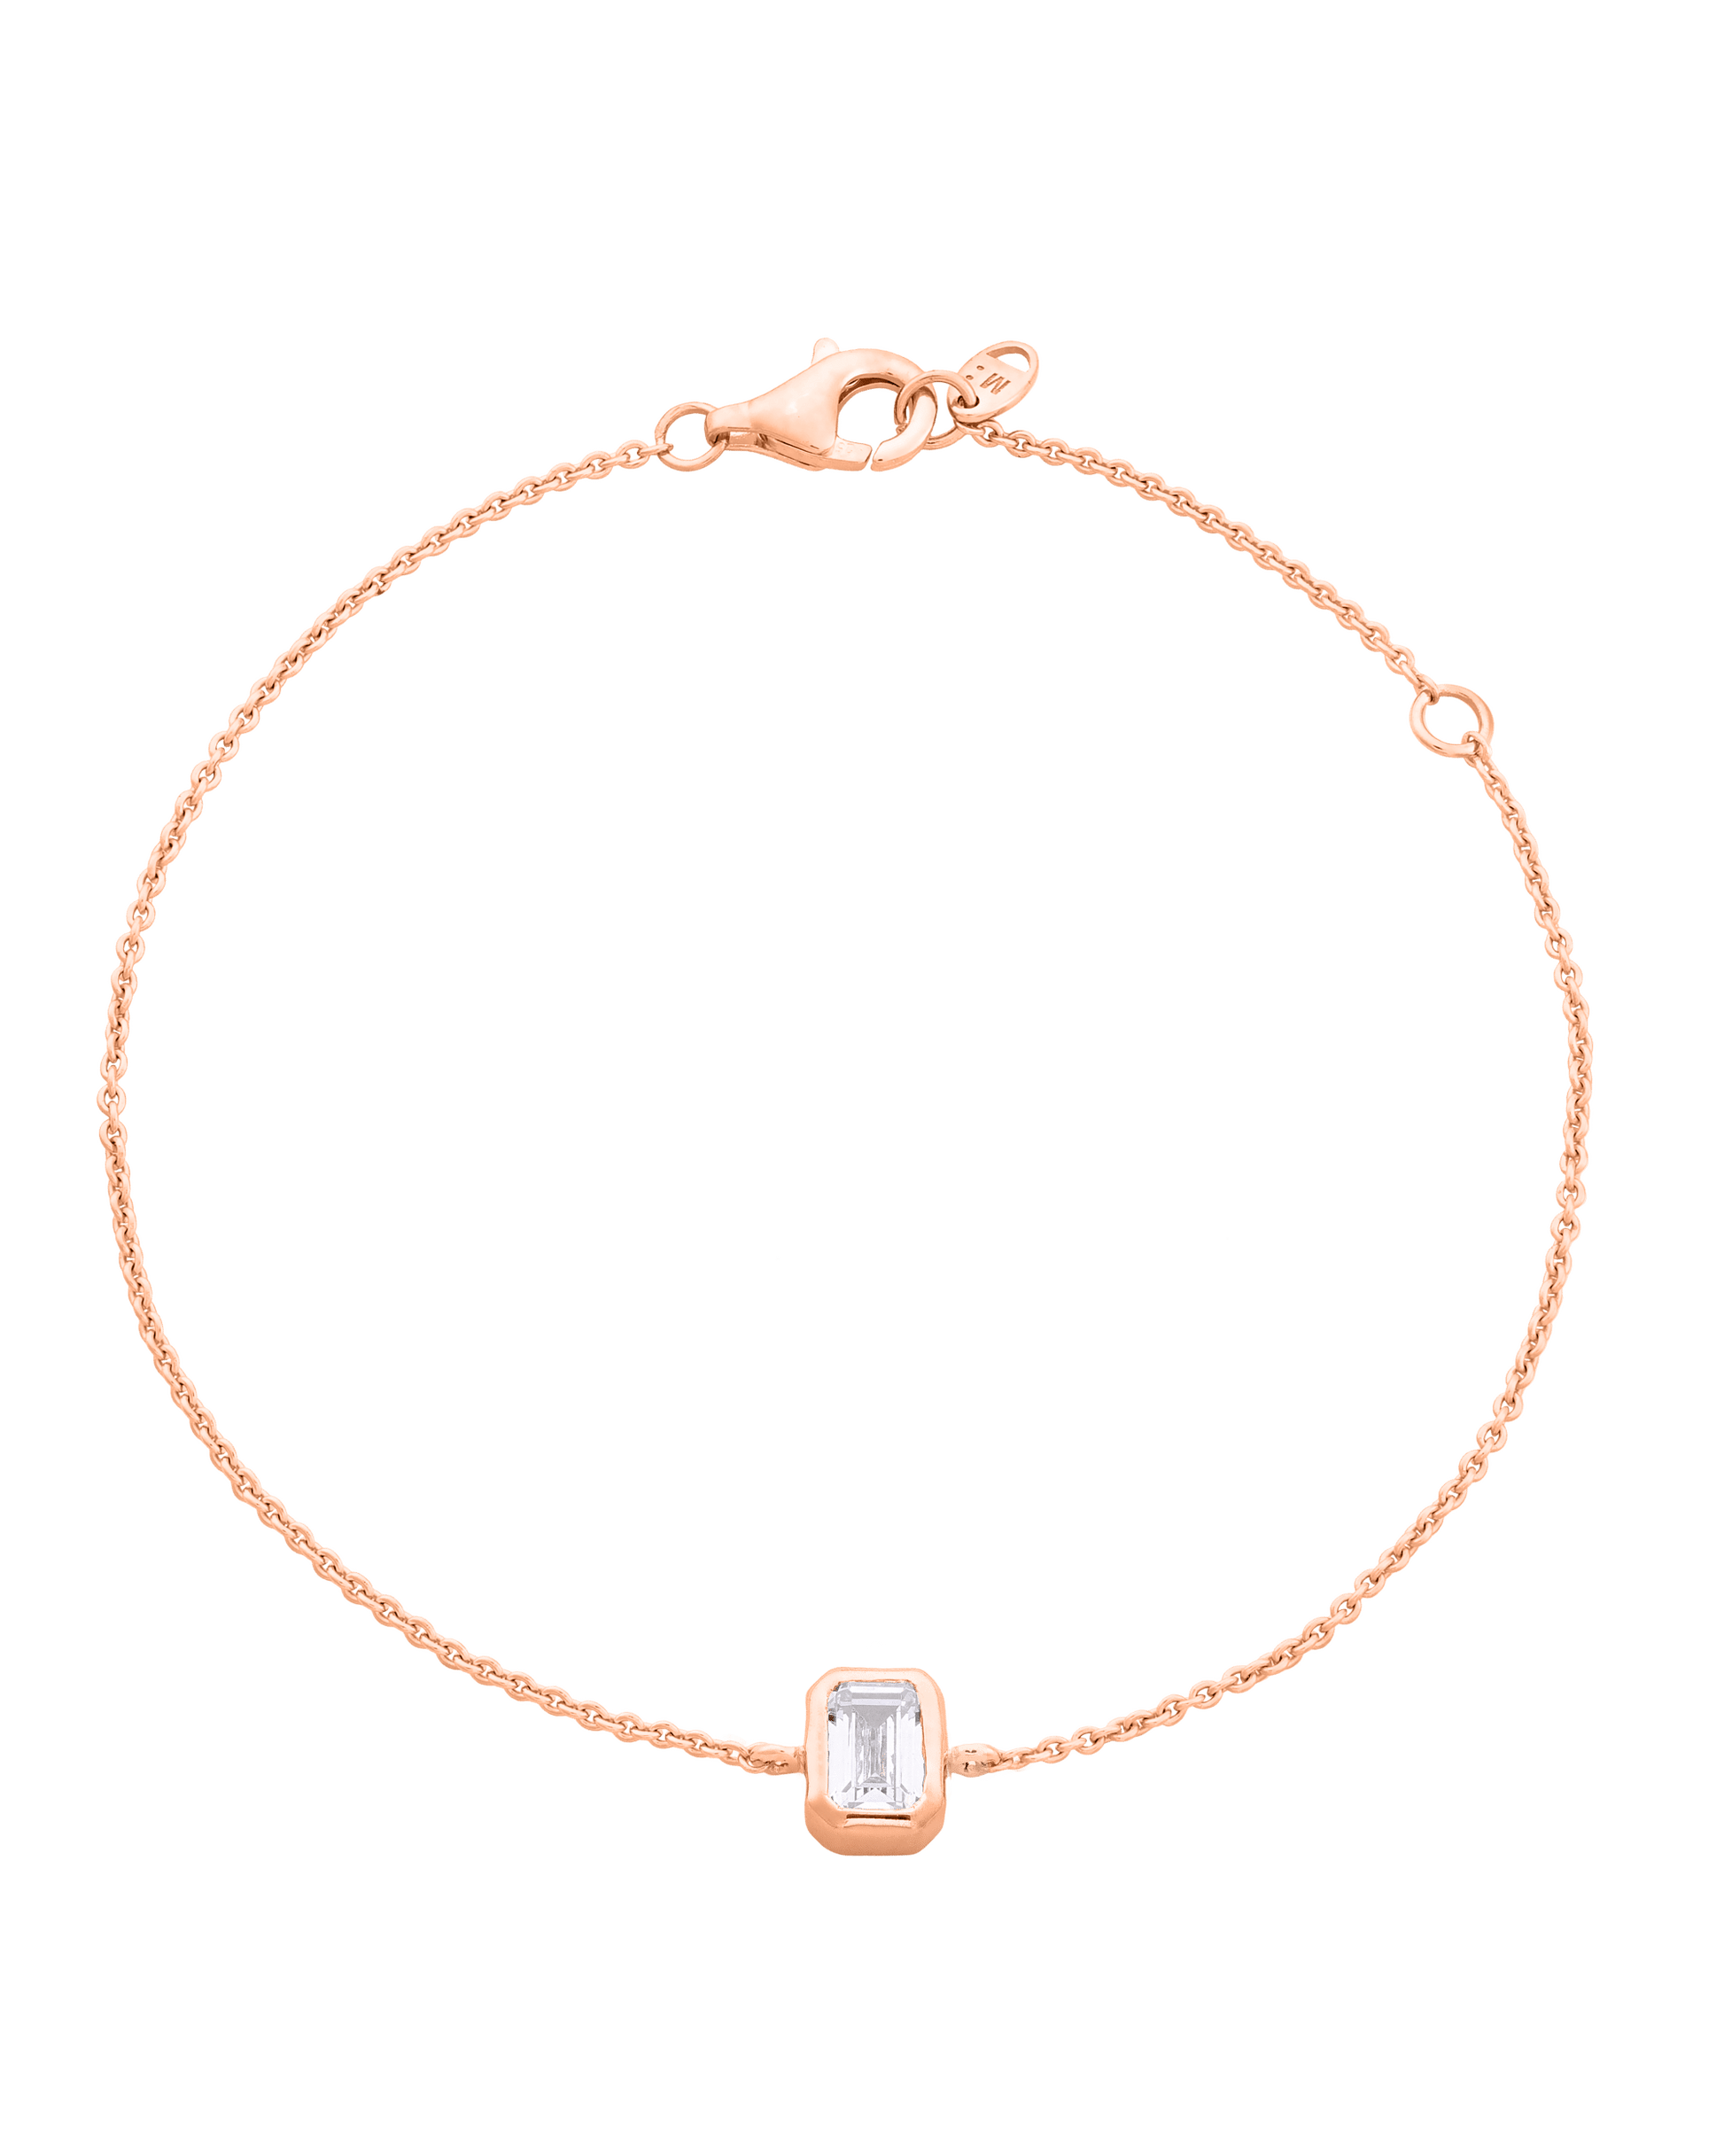 Emerald Solitaire Diamond Bracelet - 18K Gold Vermeil Bracelets magal-dev 